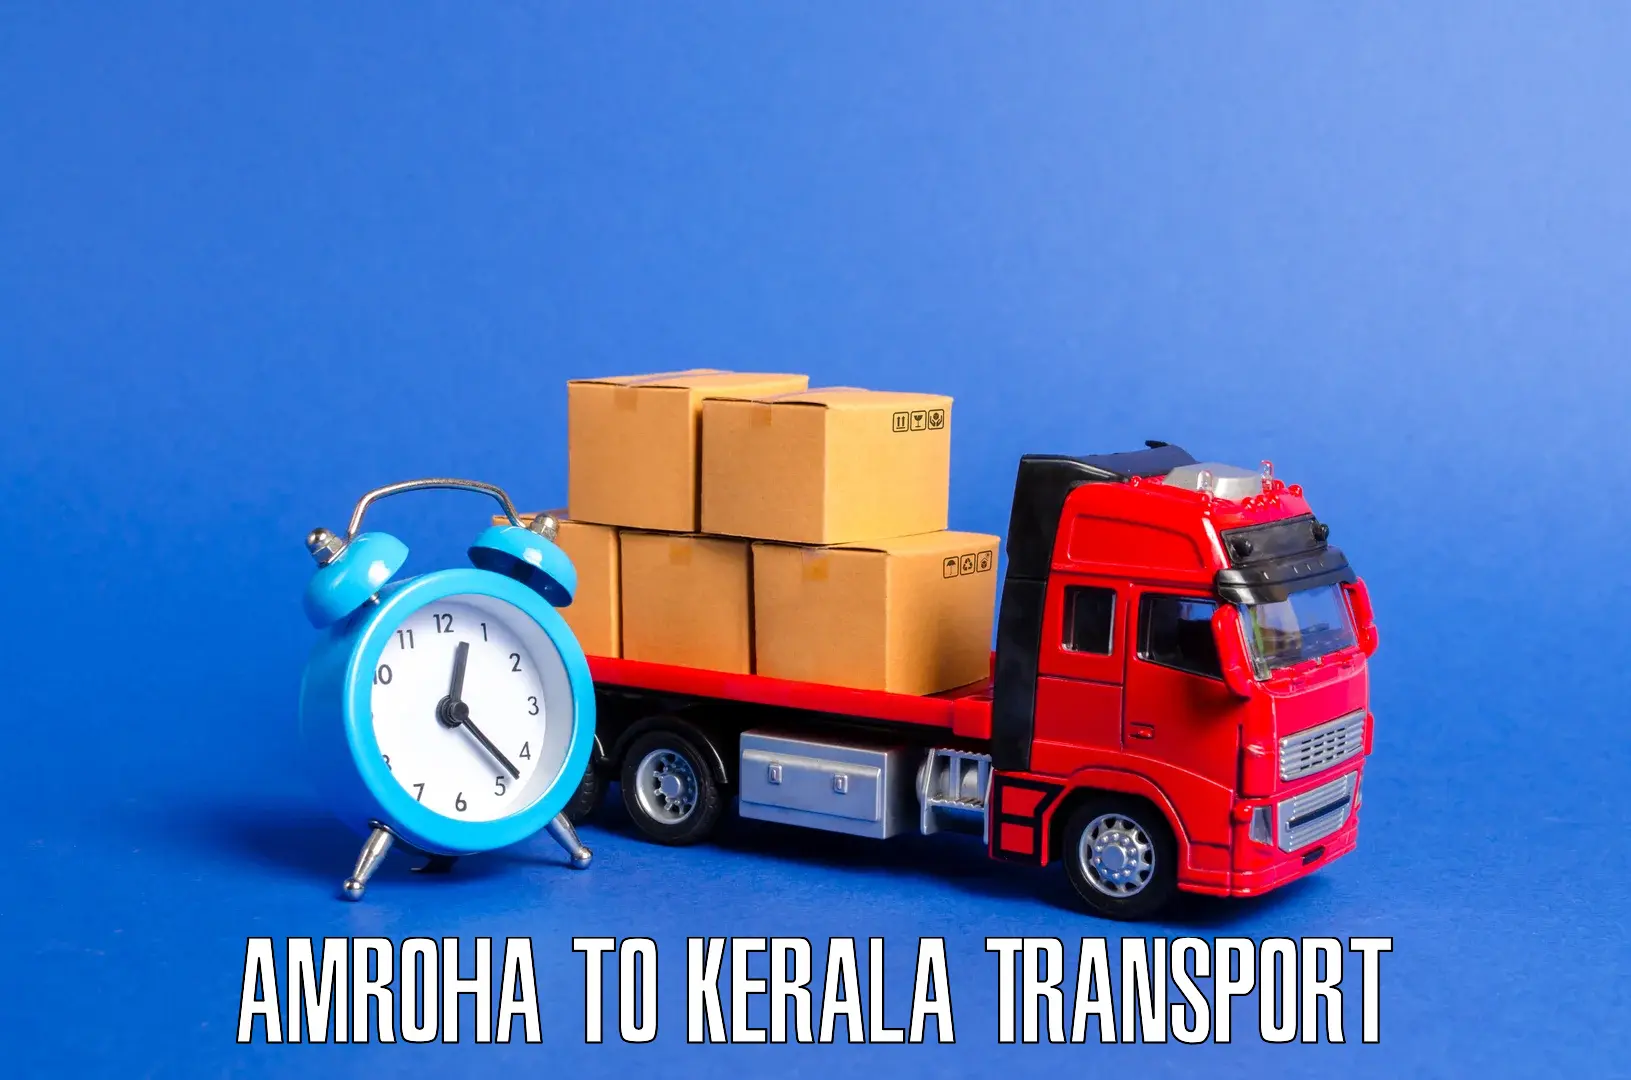 Intercity transport in Amroha to Nedumkandam